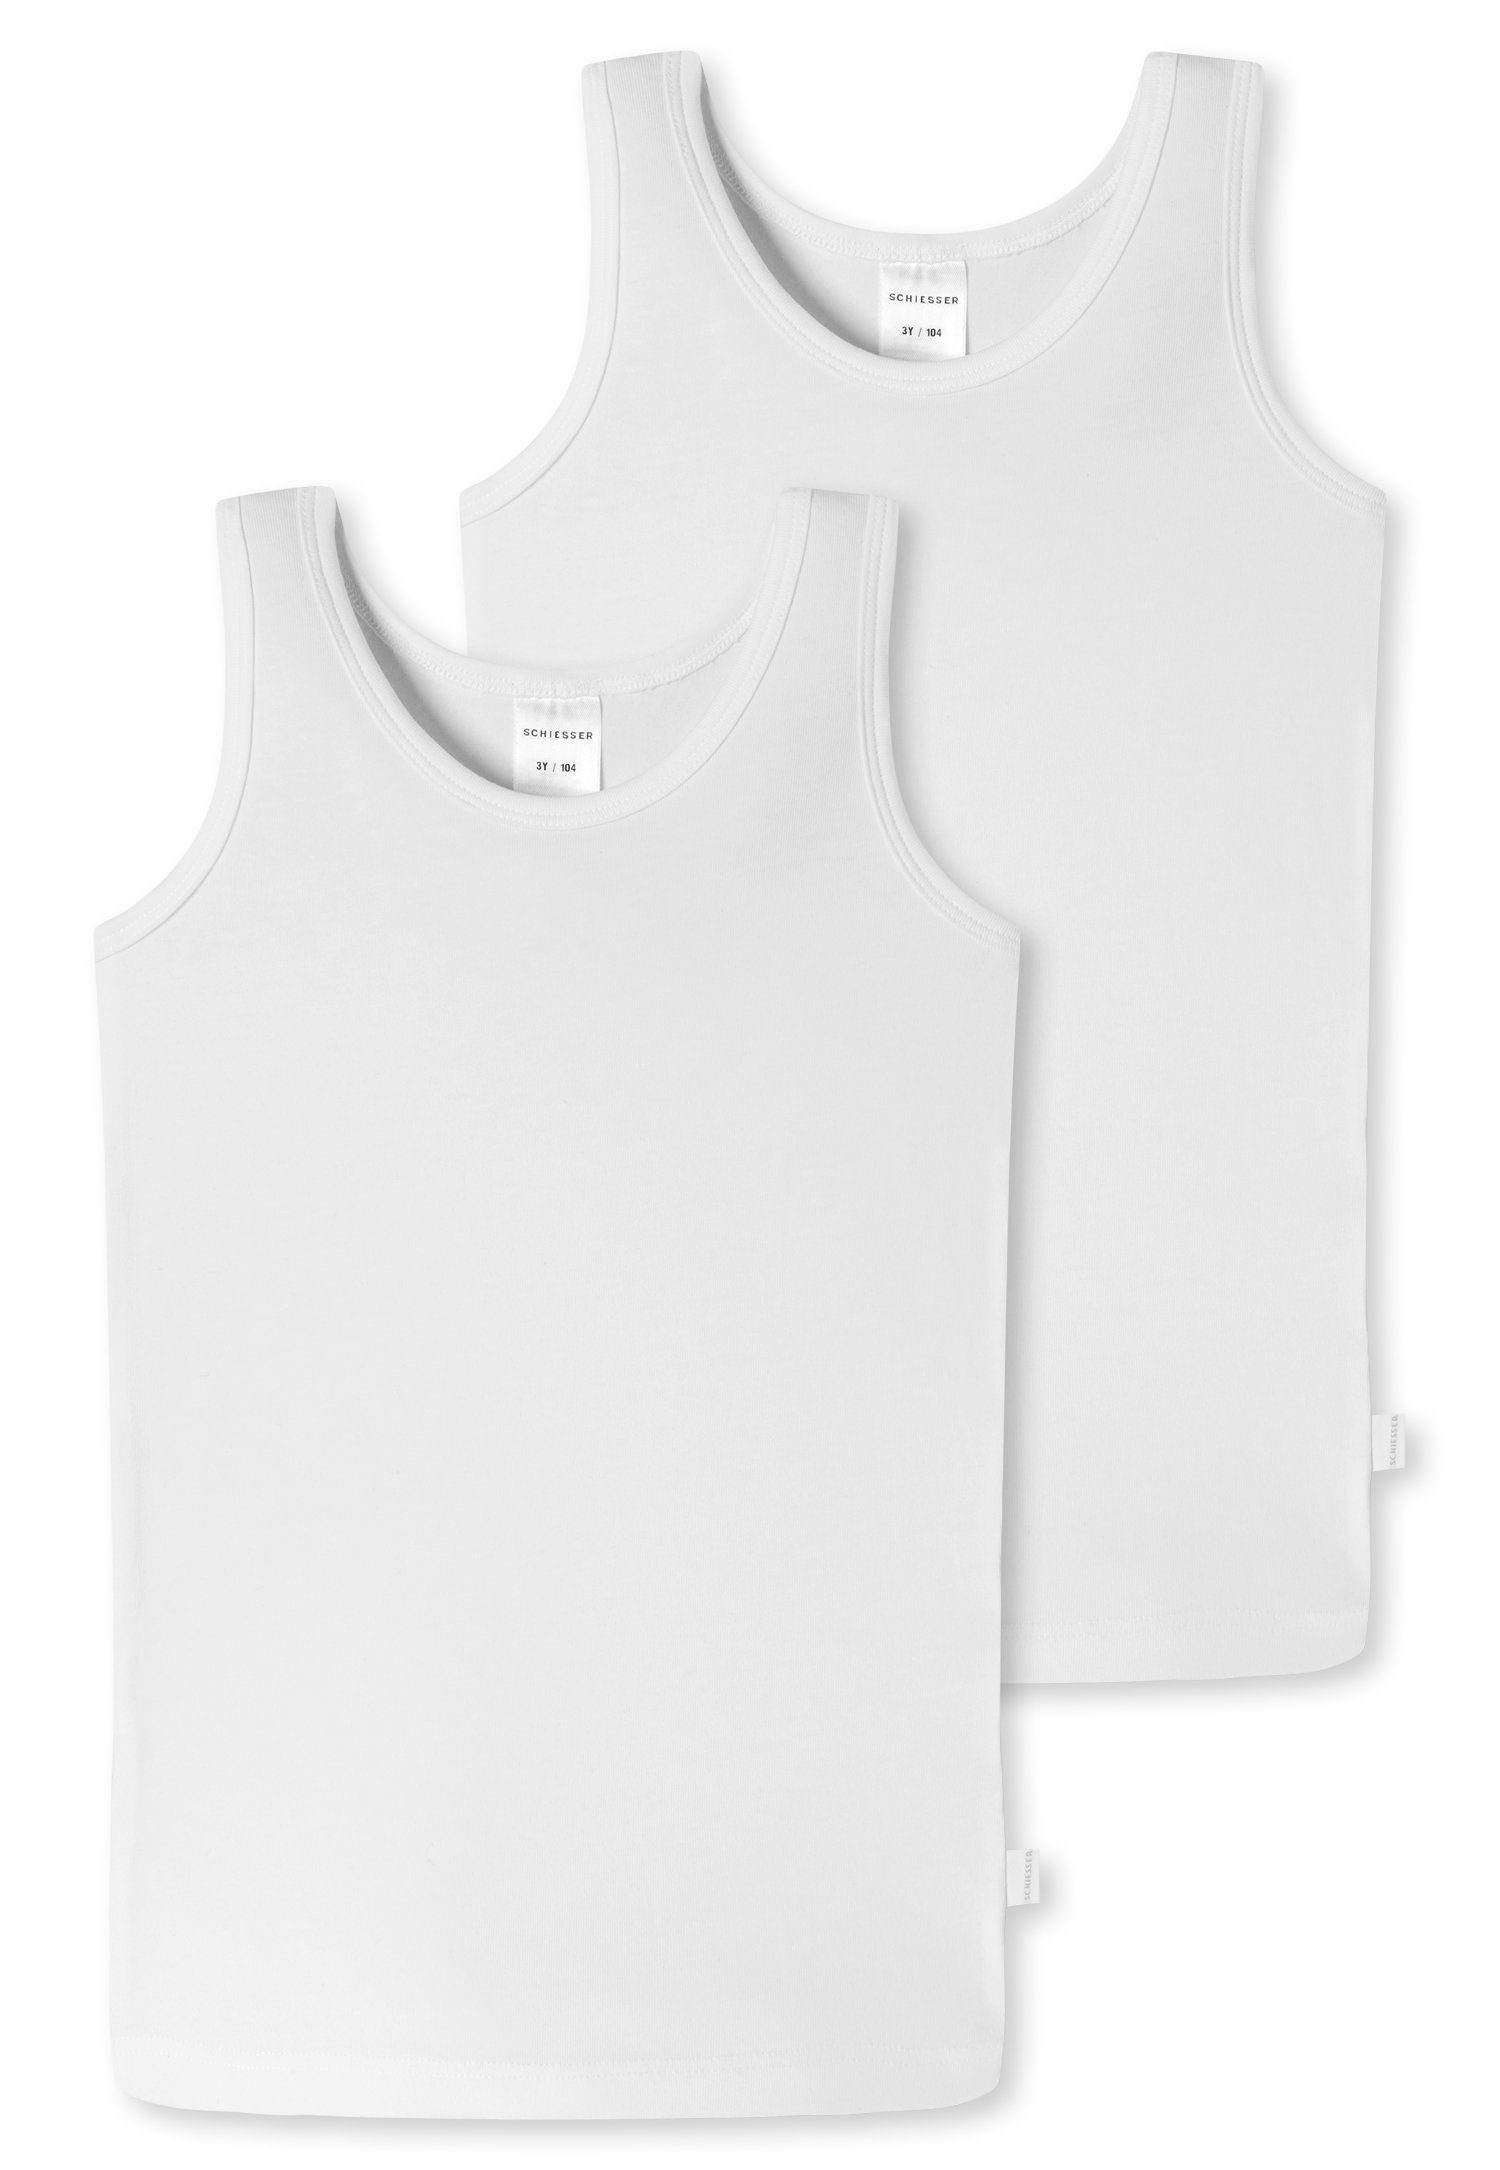 Schiesser Unterhemd Markenlabel mit weiß (2er-Pack)